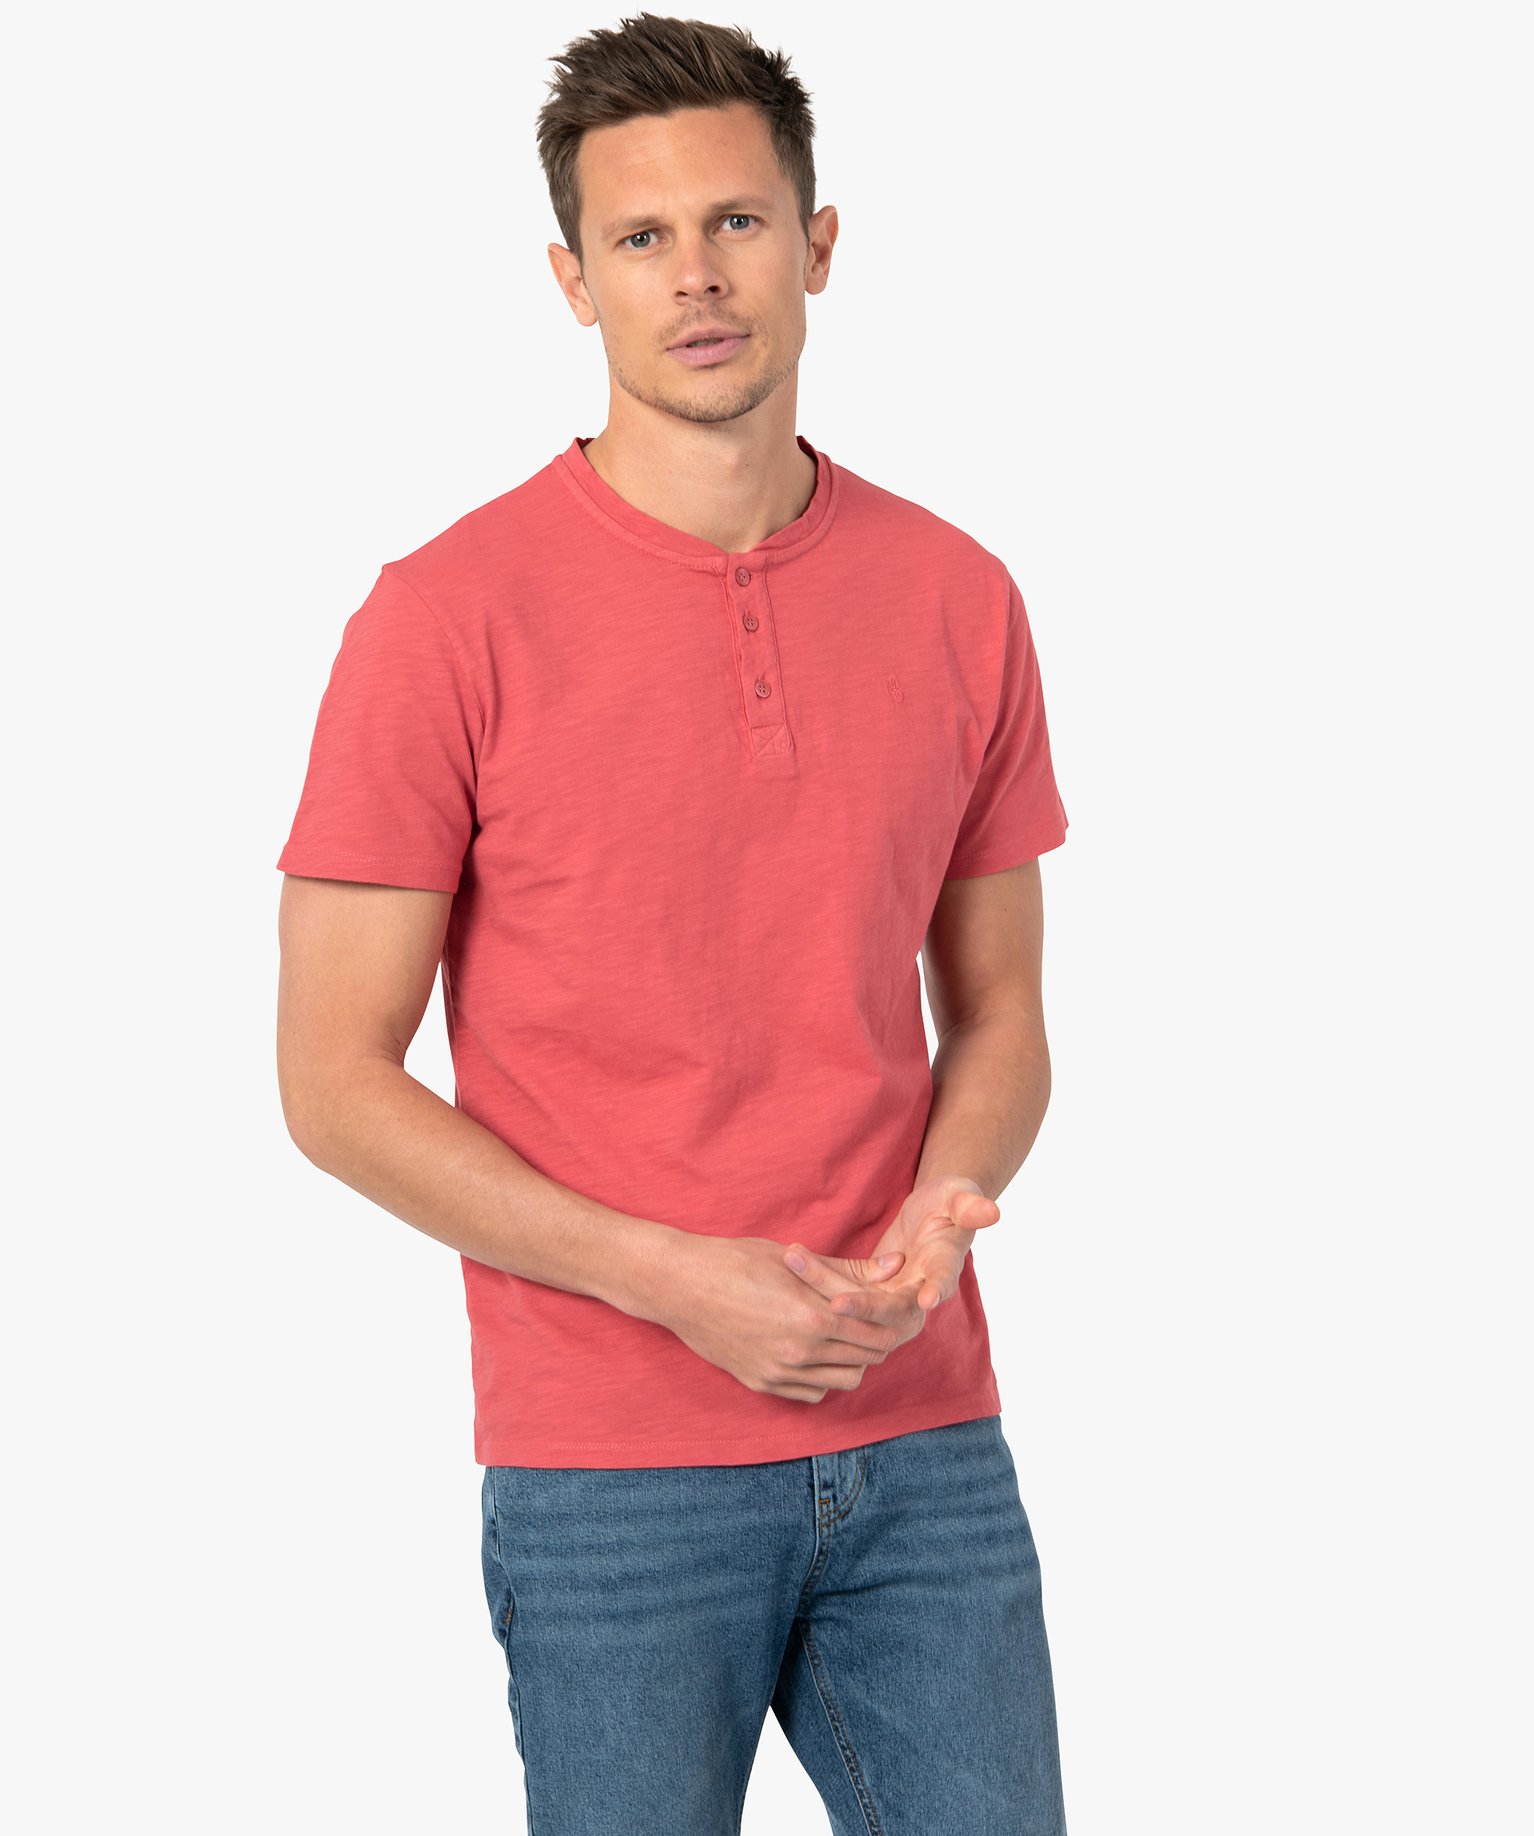 tee-shirt homme col tunisien a manches courtes au coloris unique rose tee-shirts